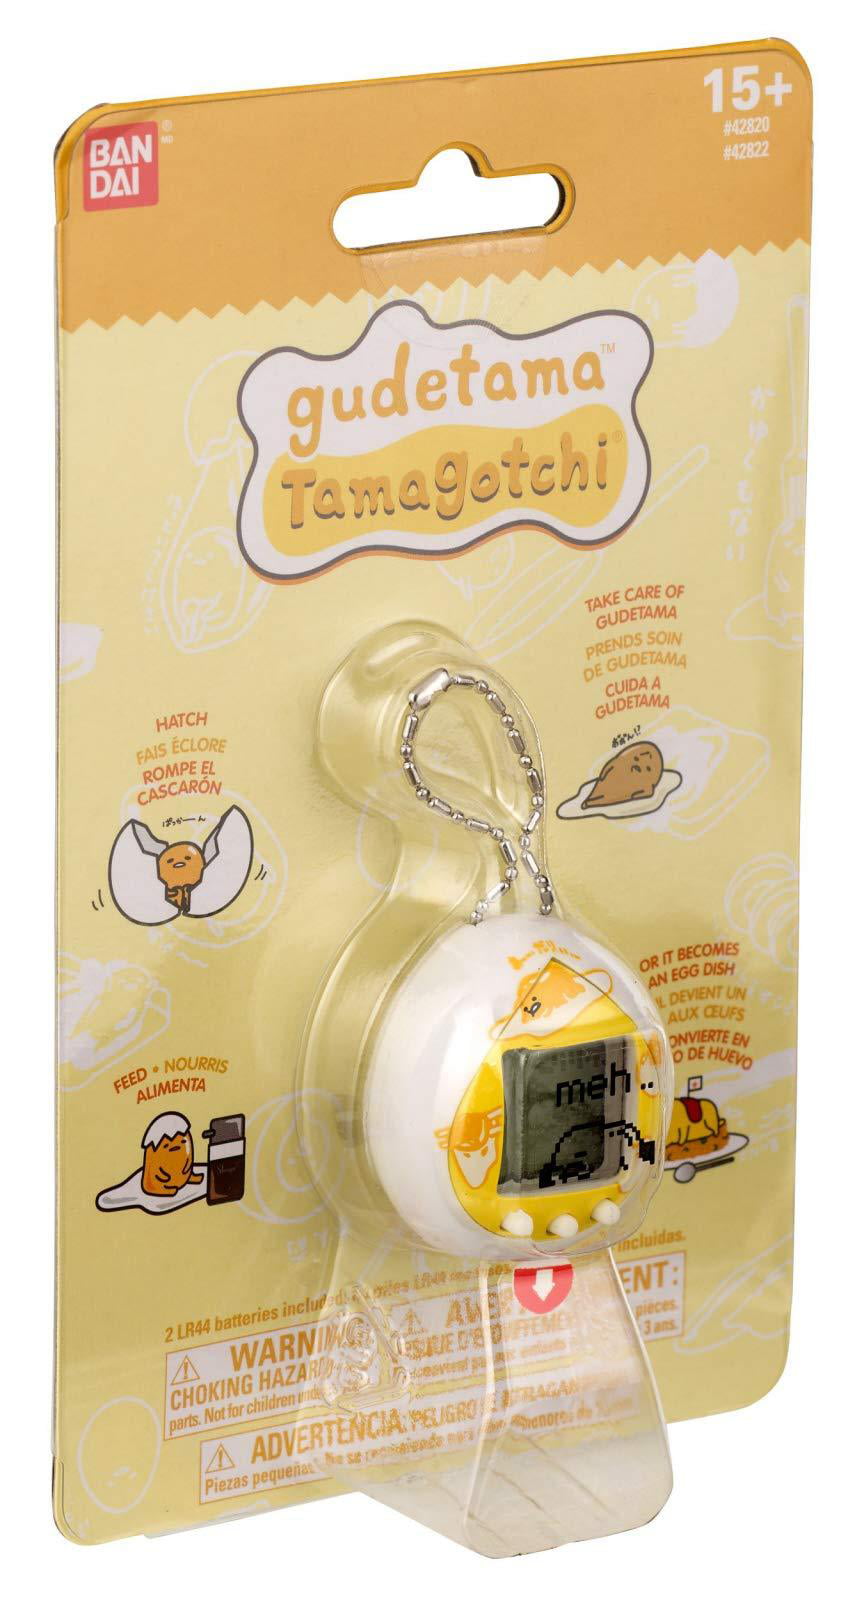 Gudetama Tamagotchi White Version Electronic Handheld Virtual Pet Genuine NEW 